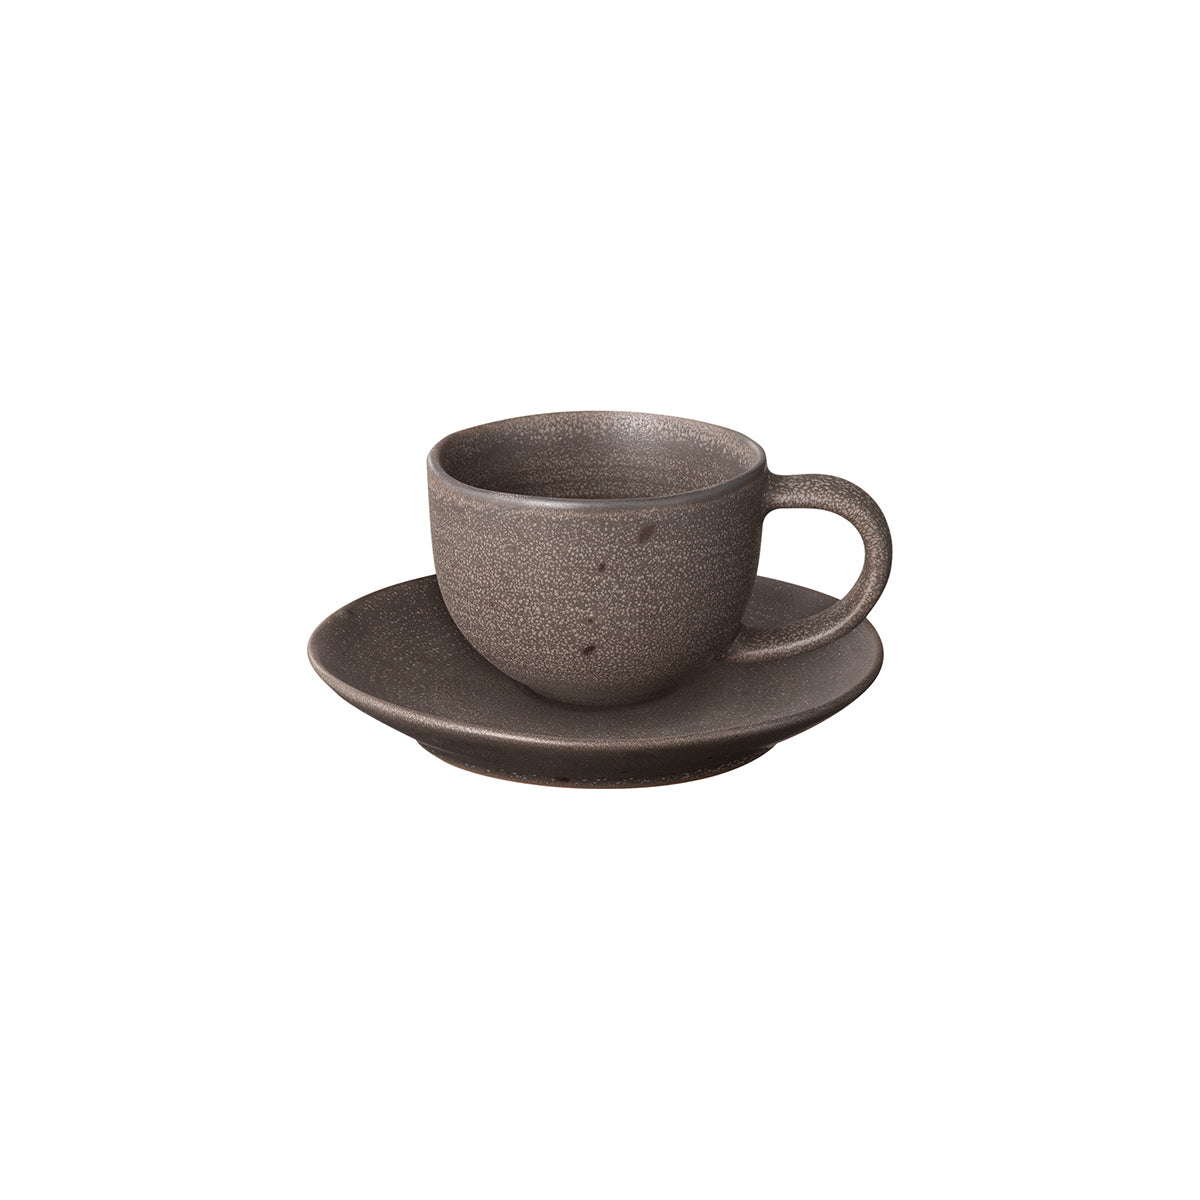 http://www.2modern.com/cdn/shop/files/blomus-kumi-stoneware-espresso-cup-with-saucer-set-of-4-color-espresso.jpg?v=1683970618